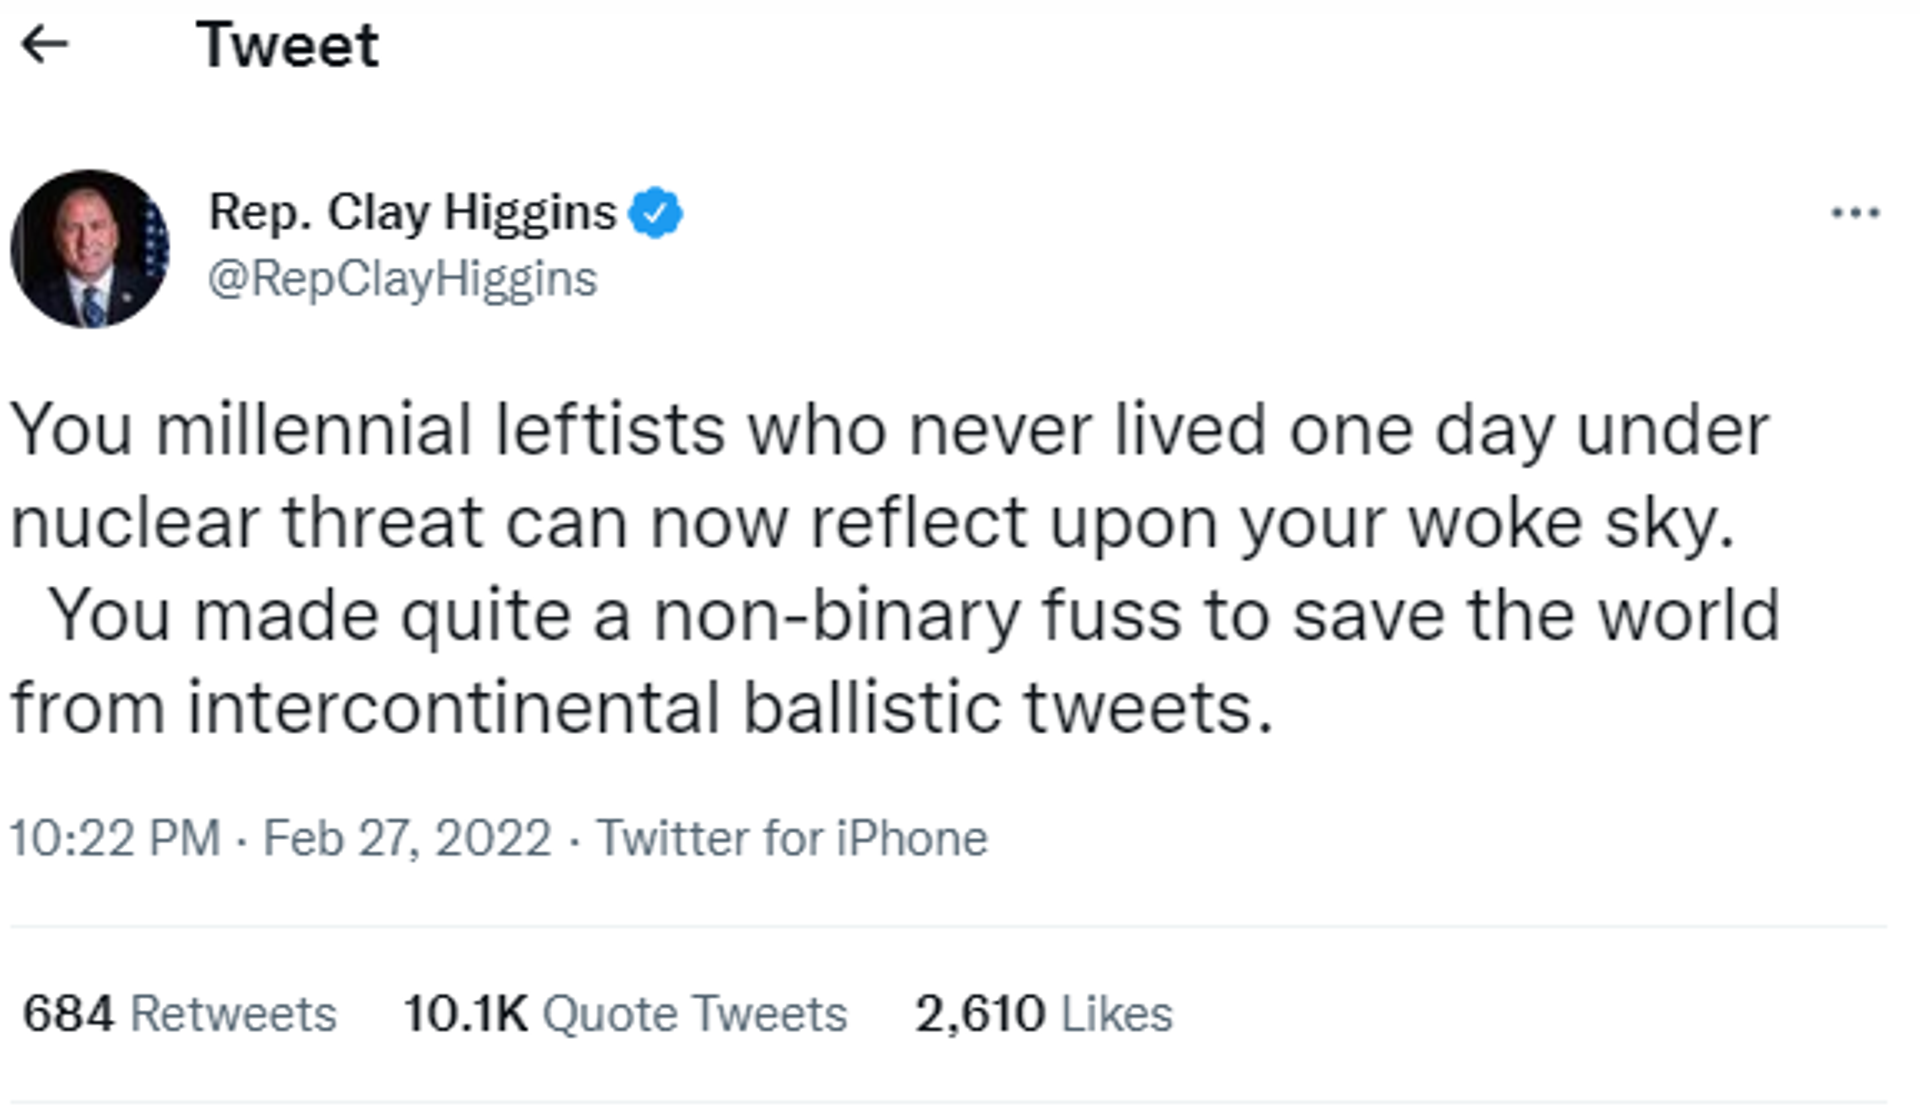 Rep. Clay Higgins' tweet. - Sputnik International, 1920, 28.02.2022